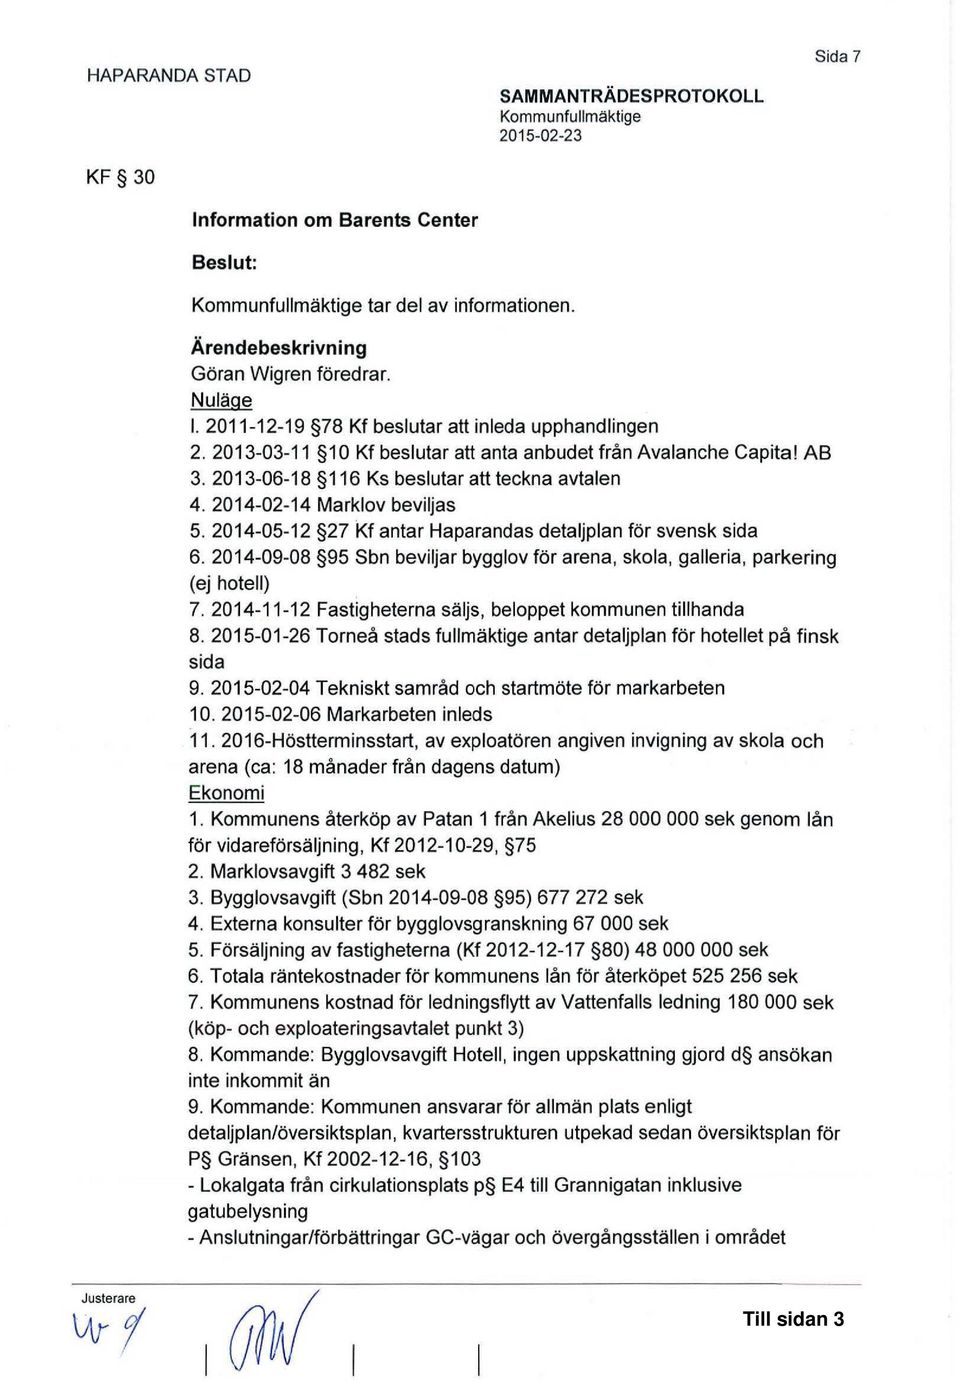 2014-02-14 Marklov beviljas 5. 2014-05-12 27 Kf antar Haparandas detaljplan för svensk sida 6. 2014-09-08 95 Sbn beviljar bygglov för arena, skola, galleria, parkering (ej hotell) 7.